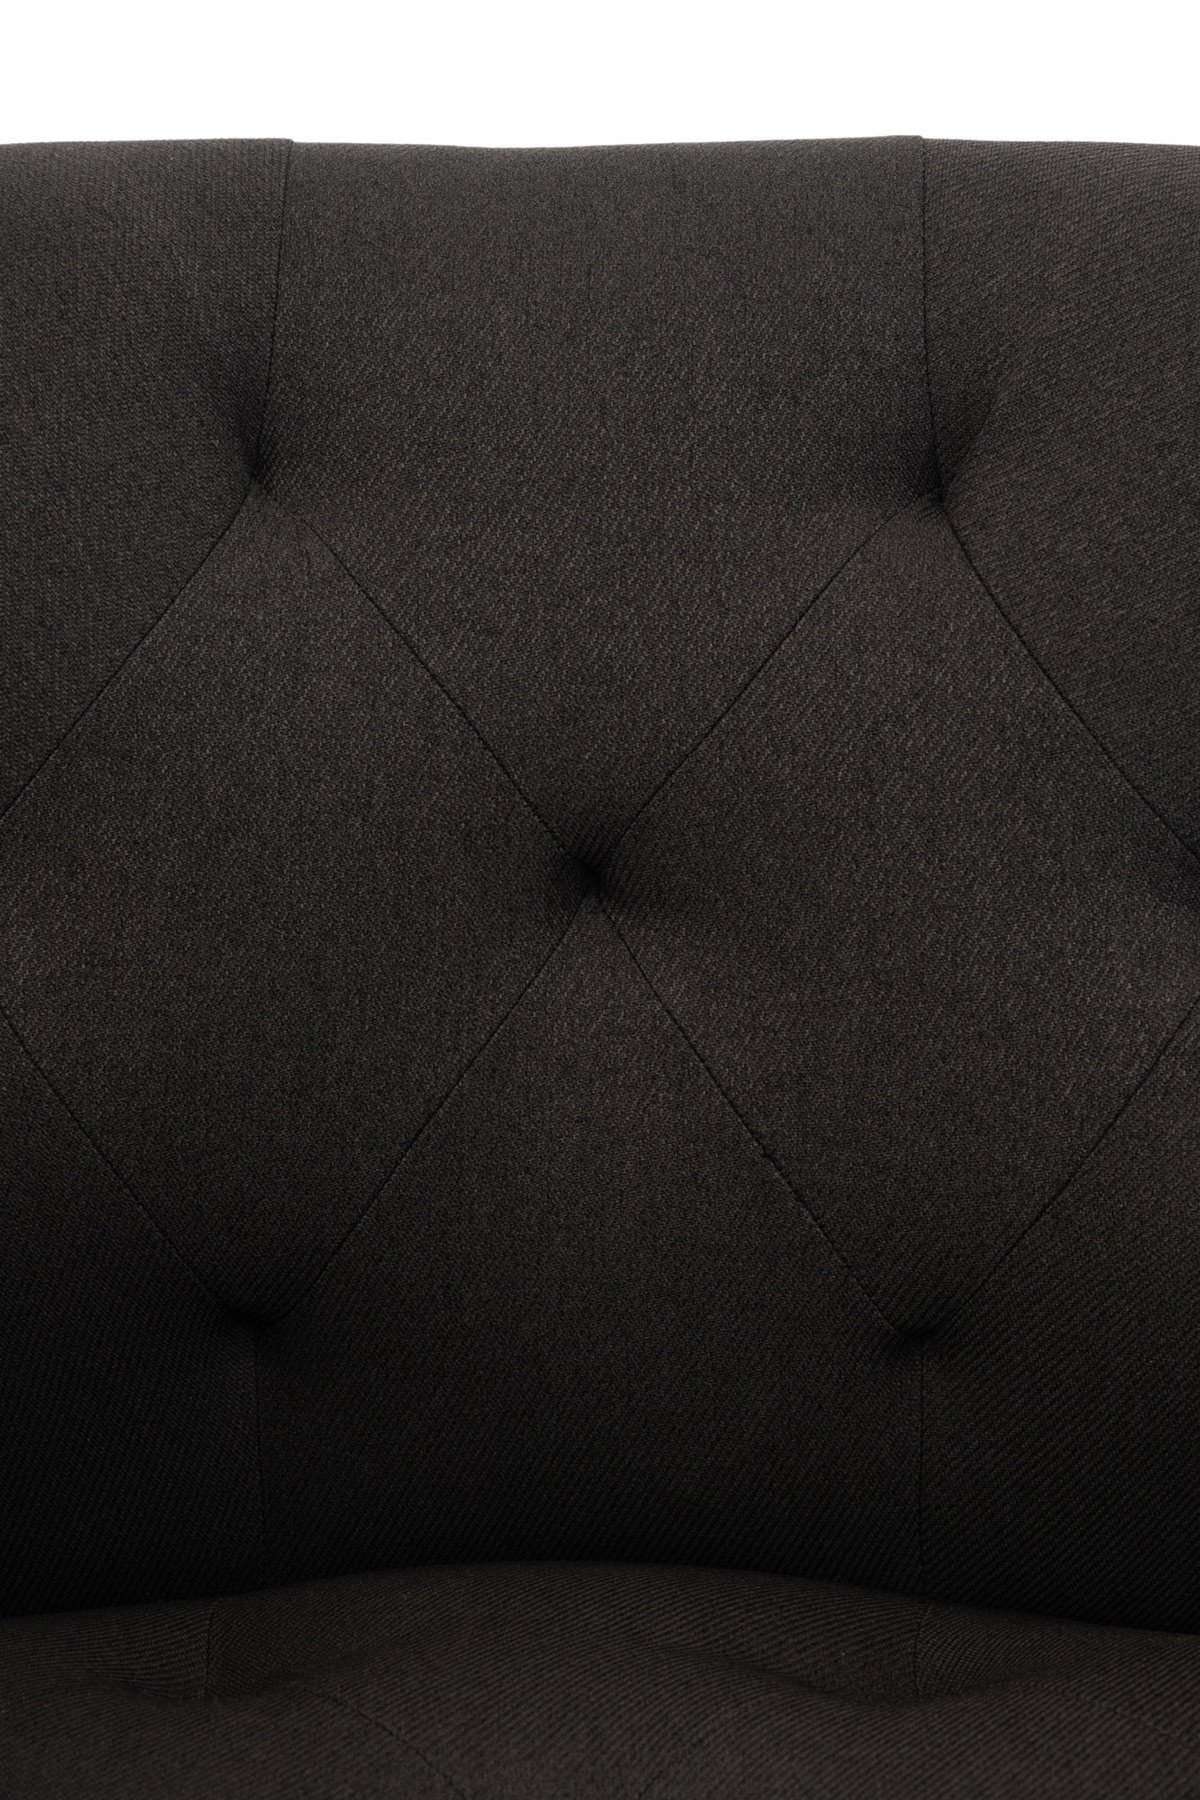 TPFLiving Esszimmerstuhl Lamfol mit - gepolsterter Esstischstuhl Sitzfläche - Gestell: Konferenzstuhl Sitzfläche: schwarz - hochwertig (Küchenstuhl Wohnzimmerstuhl), schwarz Stoff - Metall